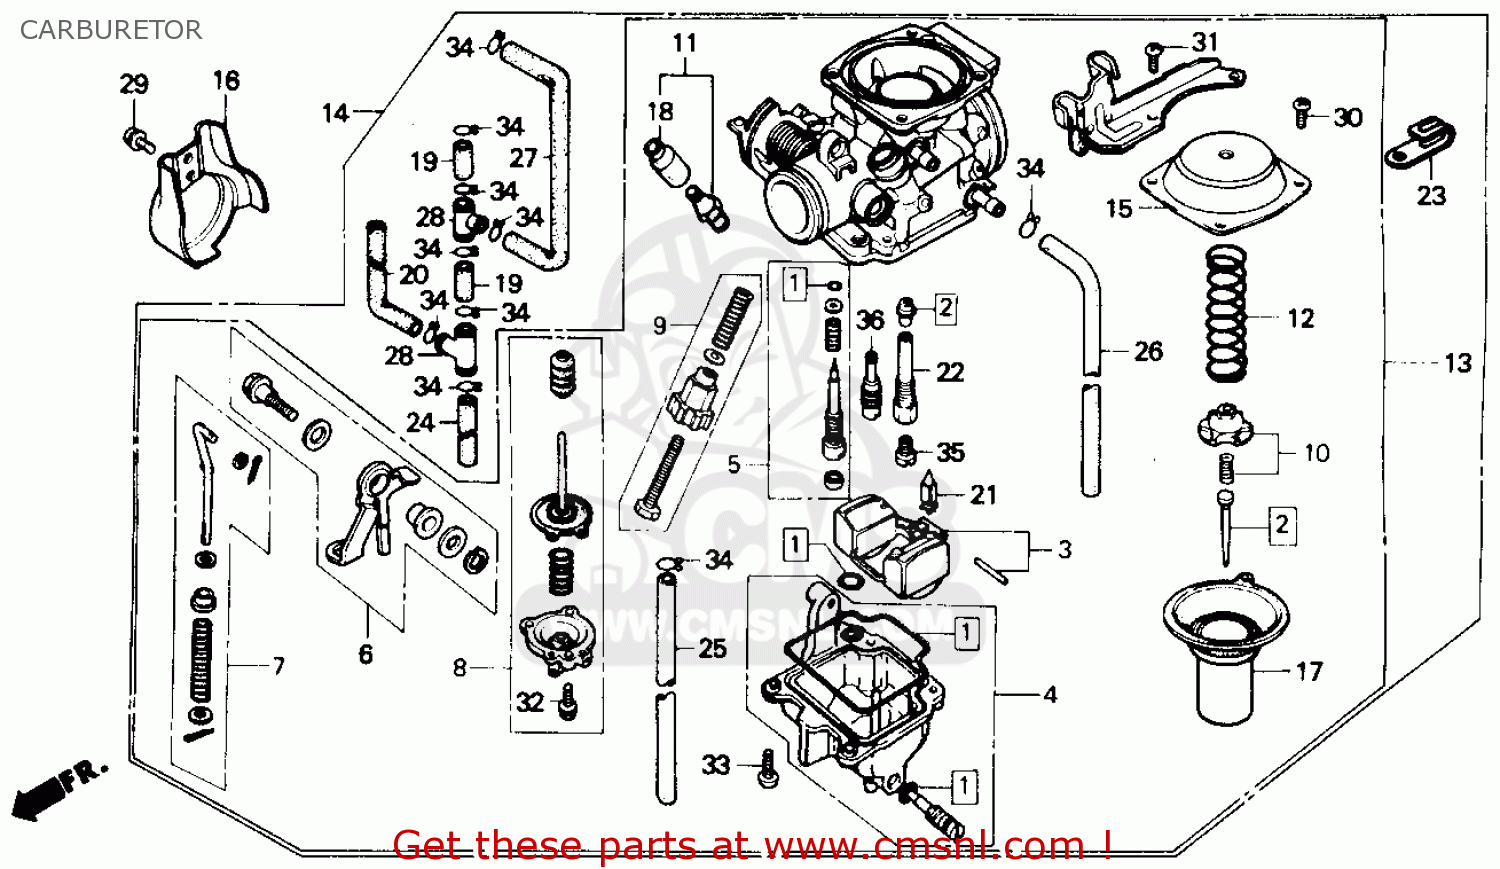 1985 Honda rebel carburetor diagram #1